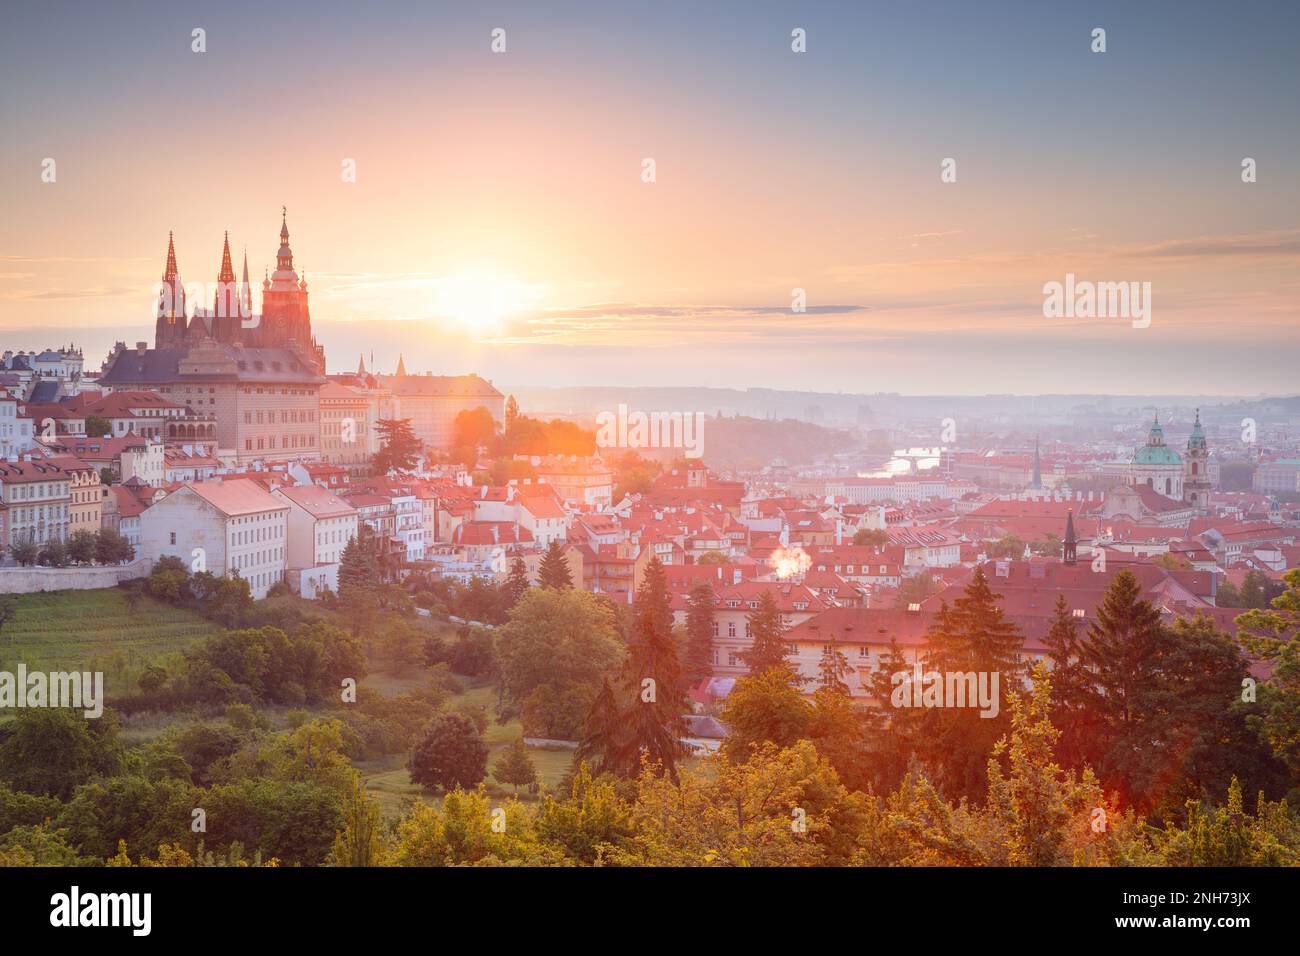 Praga, Repubblica Ceca. Immagine del paesaggio urbano di Praga, capitale della Repubblica Ceca con San Cattedrale di Vito durante l'alba estiva. Foto Stock